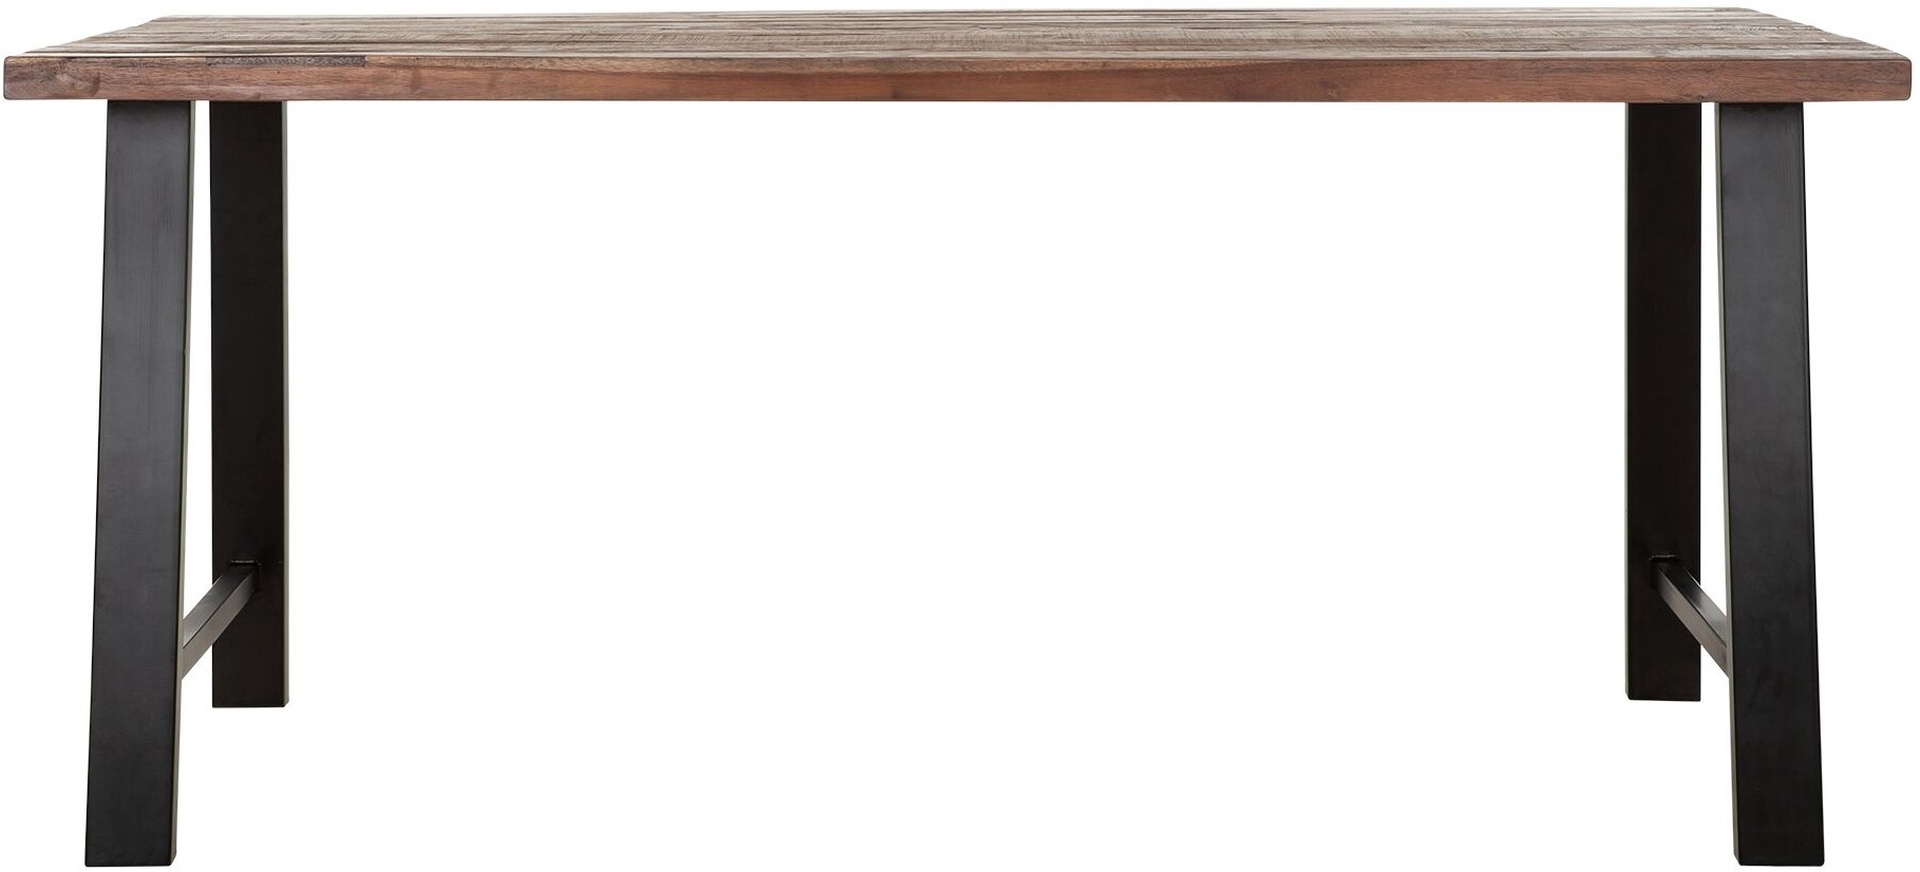 Der Esstisch Timber überzeugt mit seinem massivem aber auch modernem Design. Gefertigt wurde es aus verschiedenen Holzarten, welche einen natürlichen Farbton besitzen. Der Esstisch besitzt eine Länge von 175 cm.